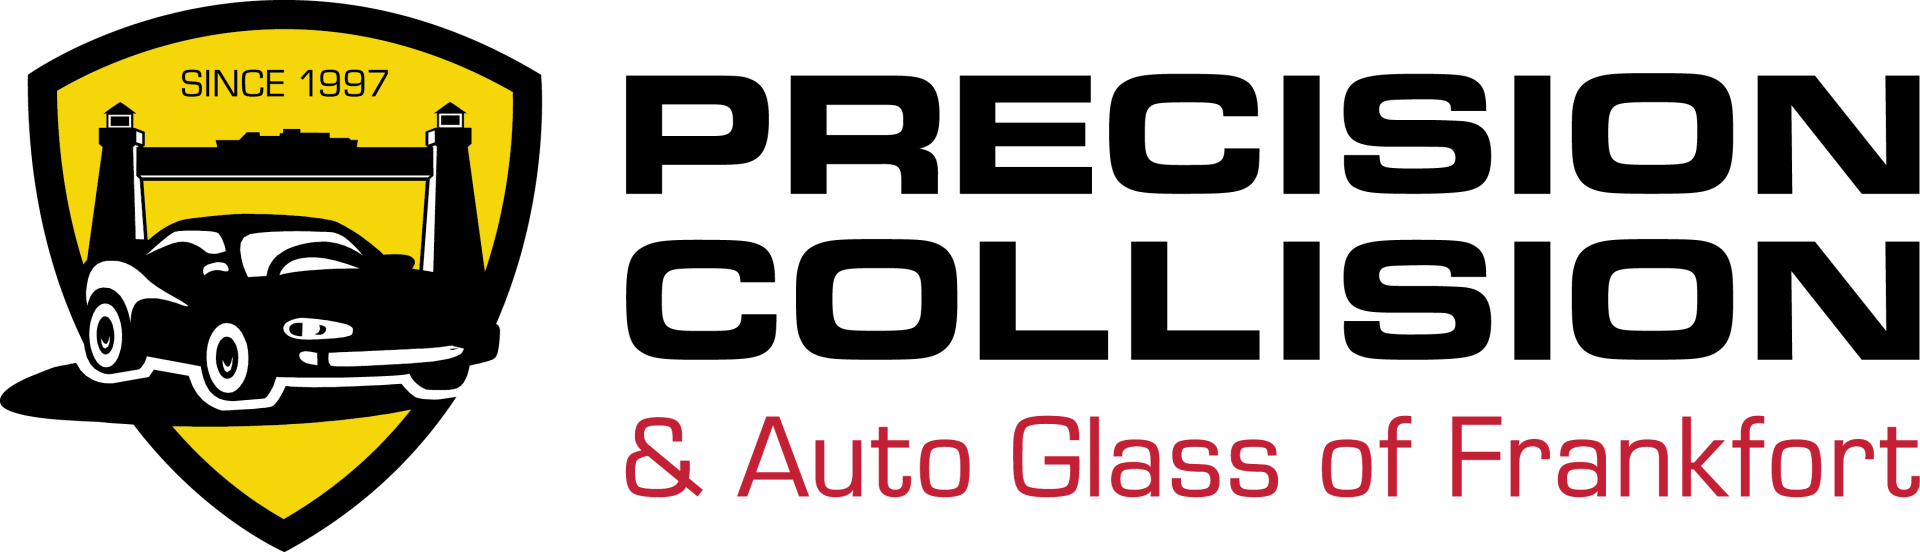 Precision Collision & Auto Glass Of Frankfort